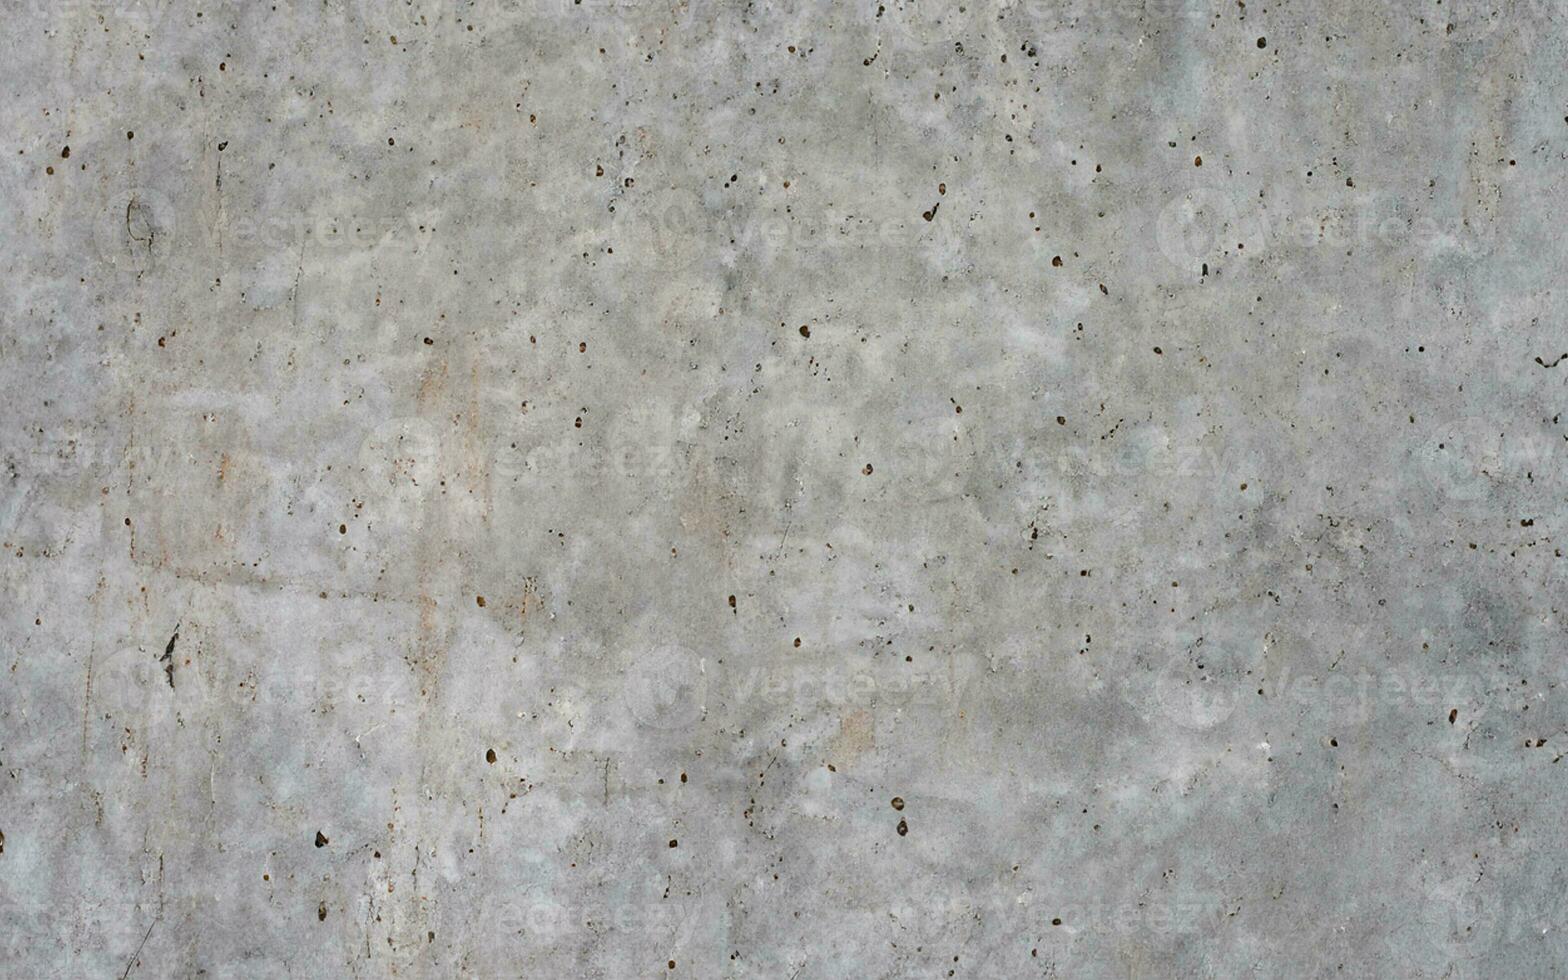 Dark concrete texture background photo